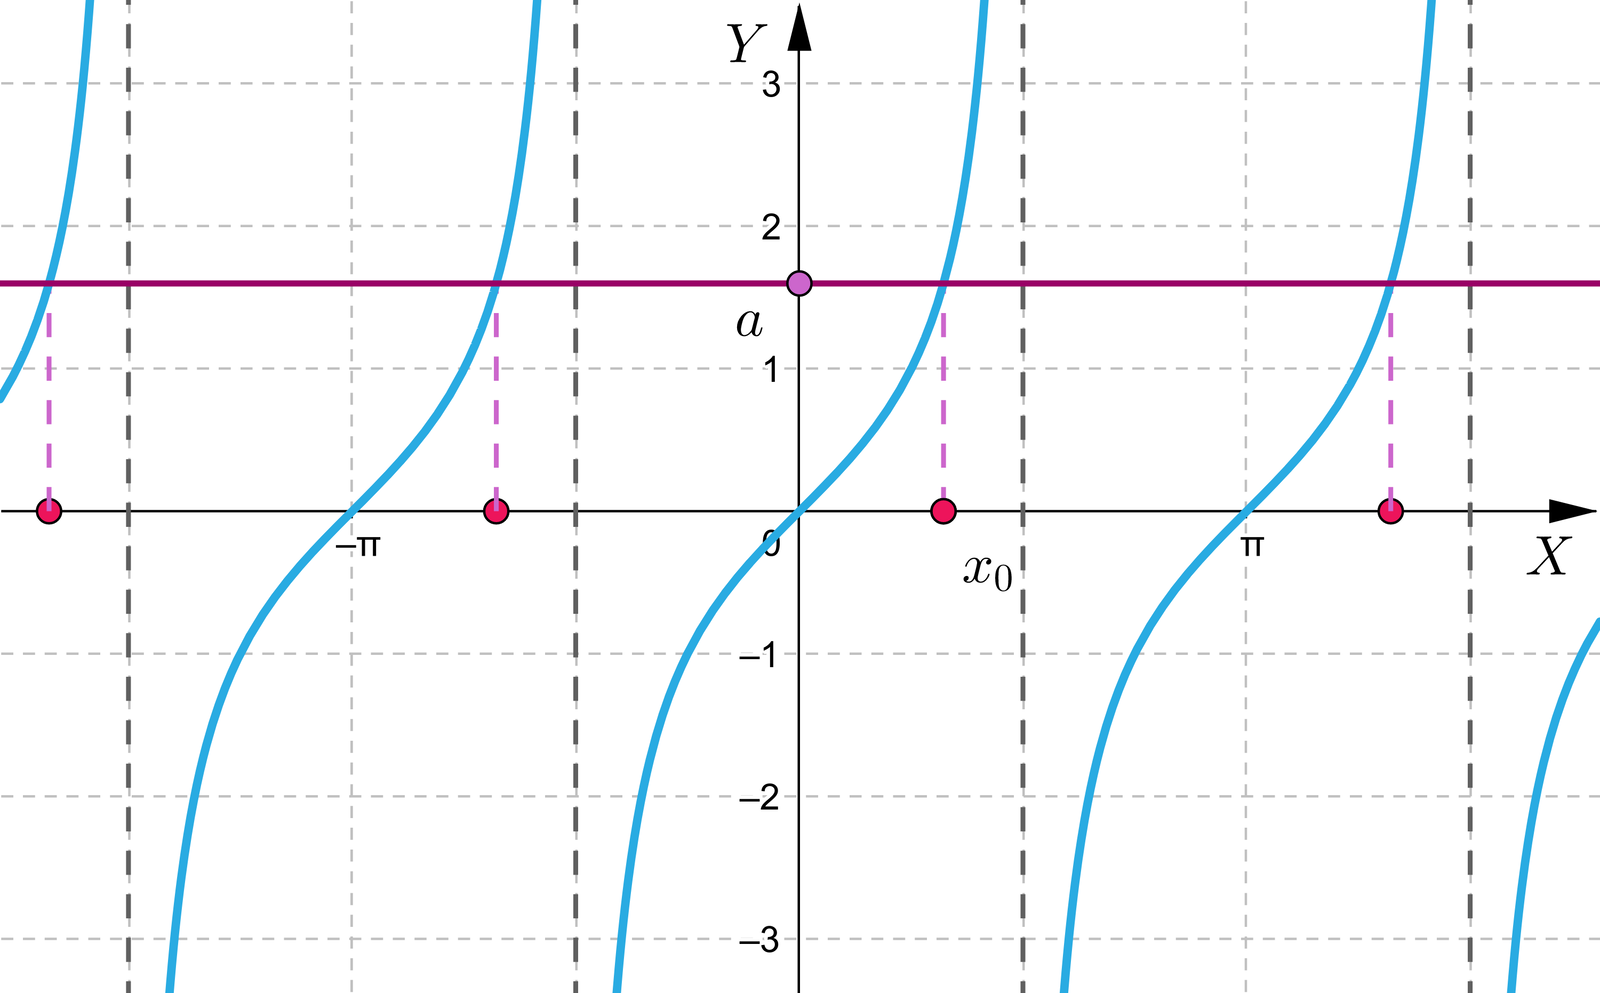 Aplet przedstawia  układ współrzędnych z poziomą osią X od minus  pi do pi oraz pionową osią Y od minus dwóch do trzech.  Na płaszczyźnie narysowany jest wykres funkcji y=tgx oraz pozioma prosta równoległa do osi x o równaniu y=a. Współczynnik a jest interaktywny i może przyjąć wartości w przedziale -4; 4. Zmiana współczynnika powoduje przesunięcie prostej w górę lub w dół.  Prosta ta, przecina wykres funkcji y=tgx.  Miejsce przecięcia jest zrzutowane na poziomą oś X i oznaczone jako argument x indeks dolny zero koniec indeksu i powtarza się dokładnie co pi.